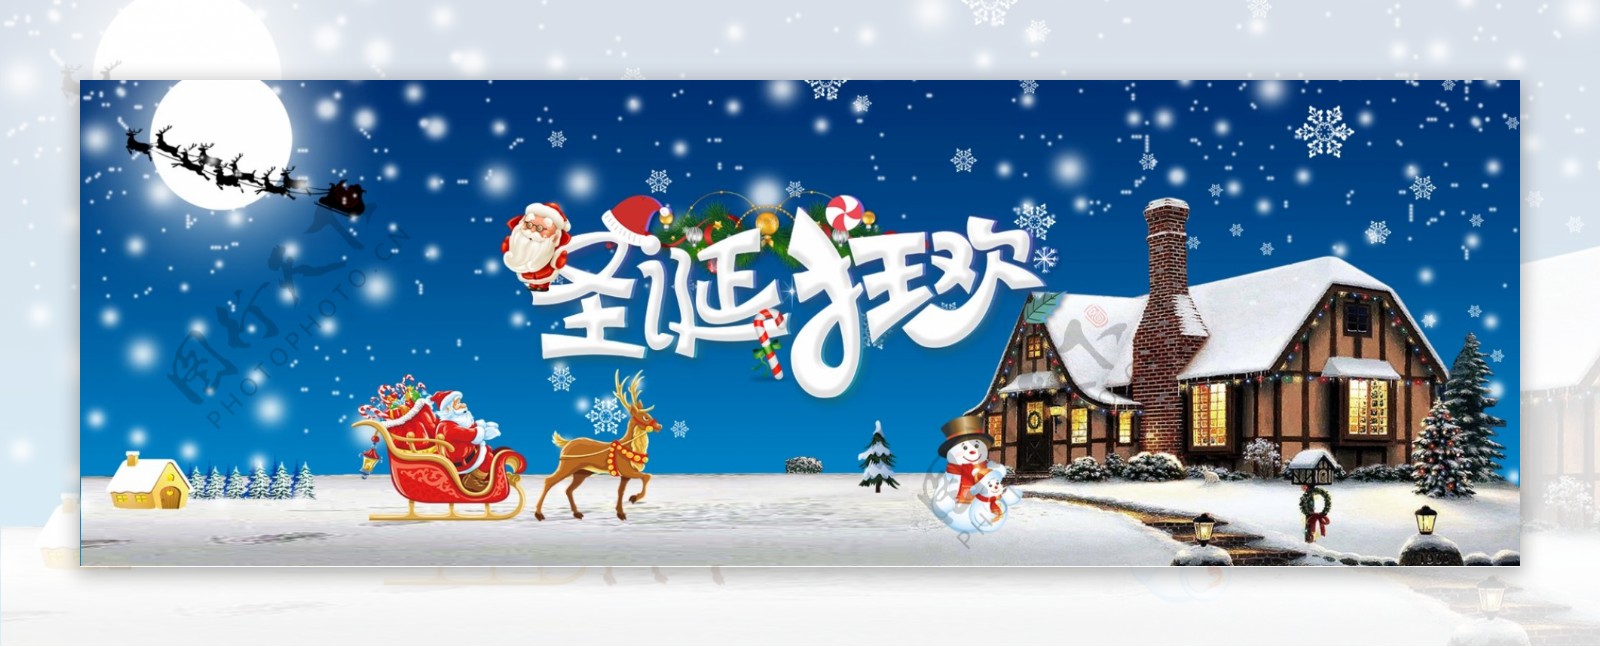 淘宝天猫圣诞季圣诞节海报4